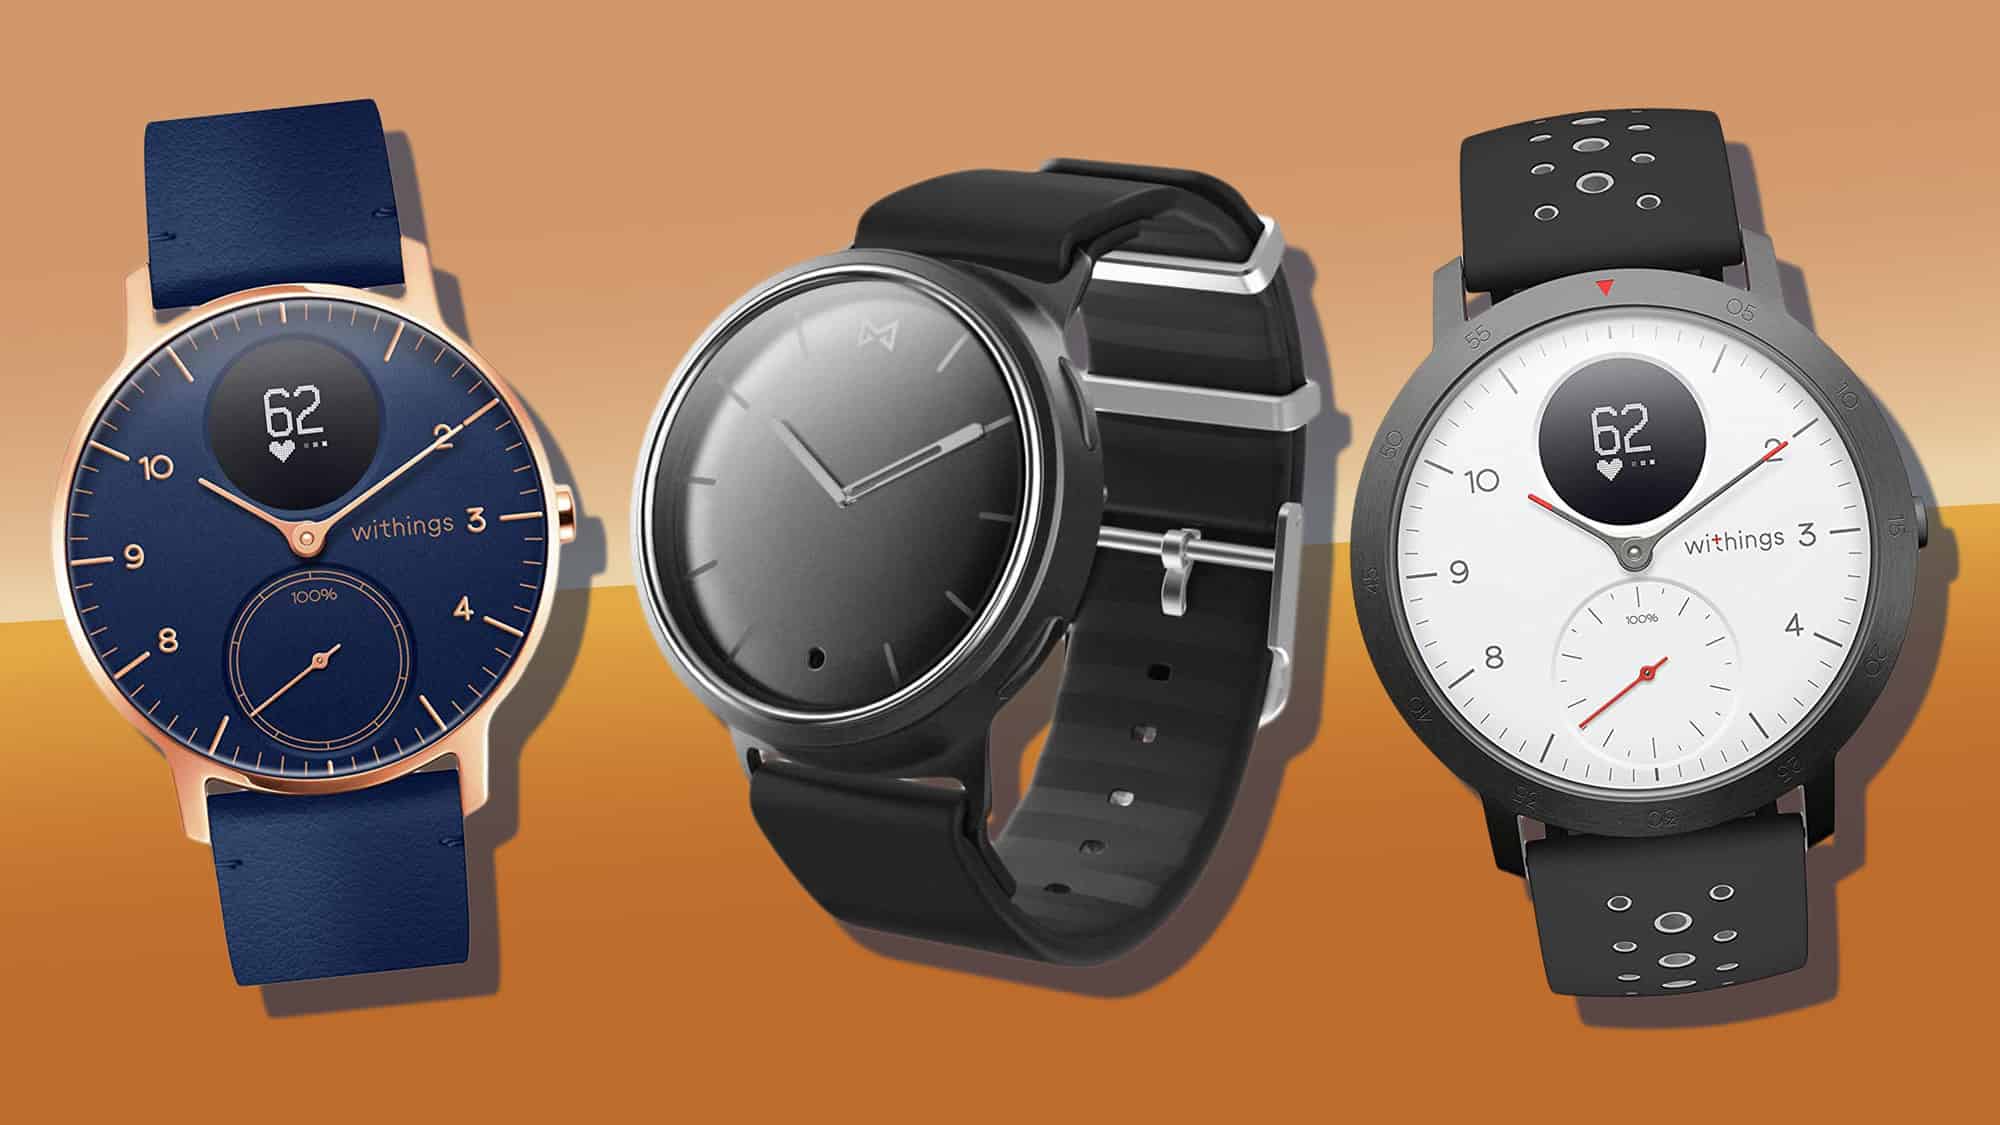 Paradoks Vask vinduer pie The Best Hybrid Smartwatch In 2023 - 9 Best Watches With Hidden Tech